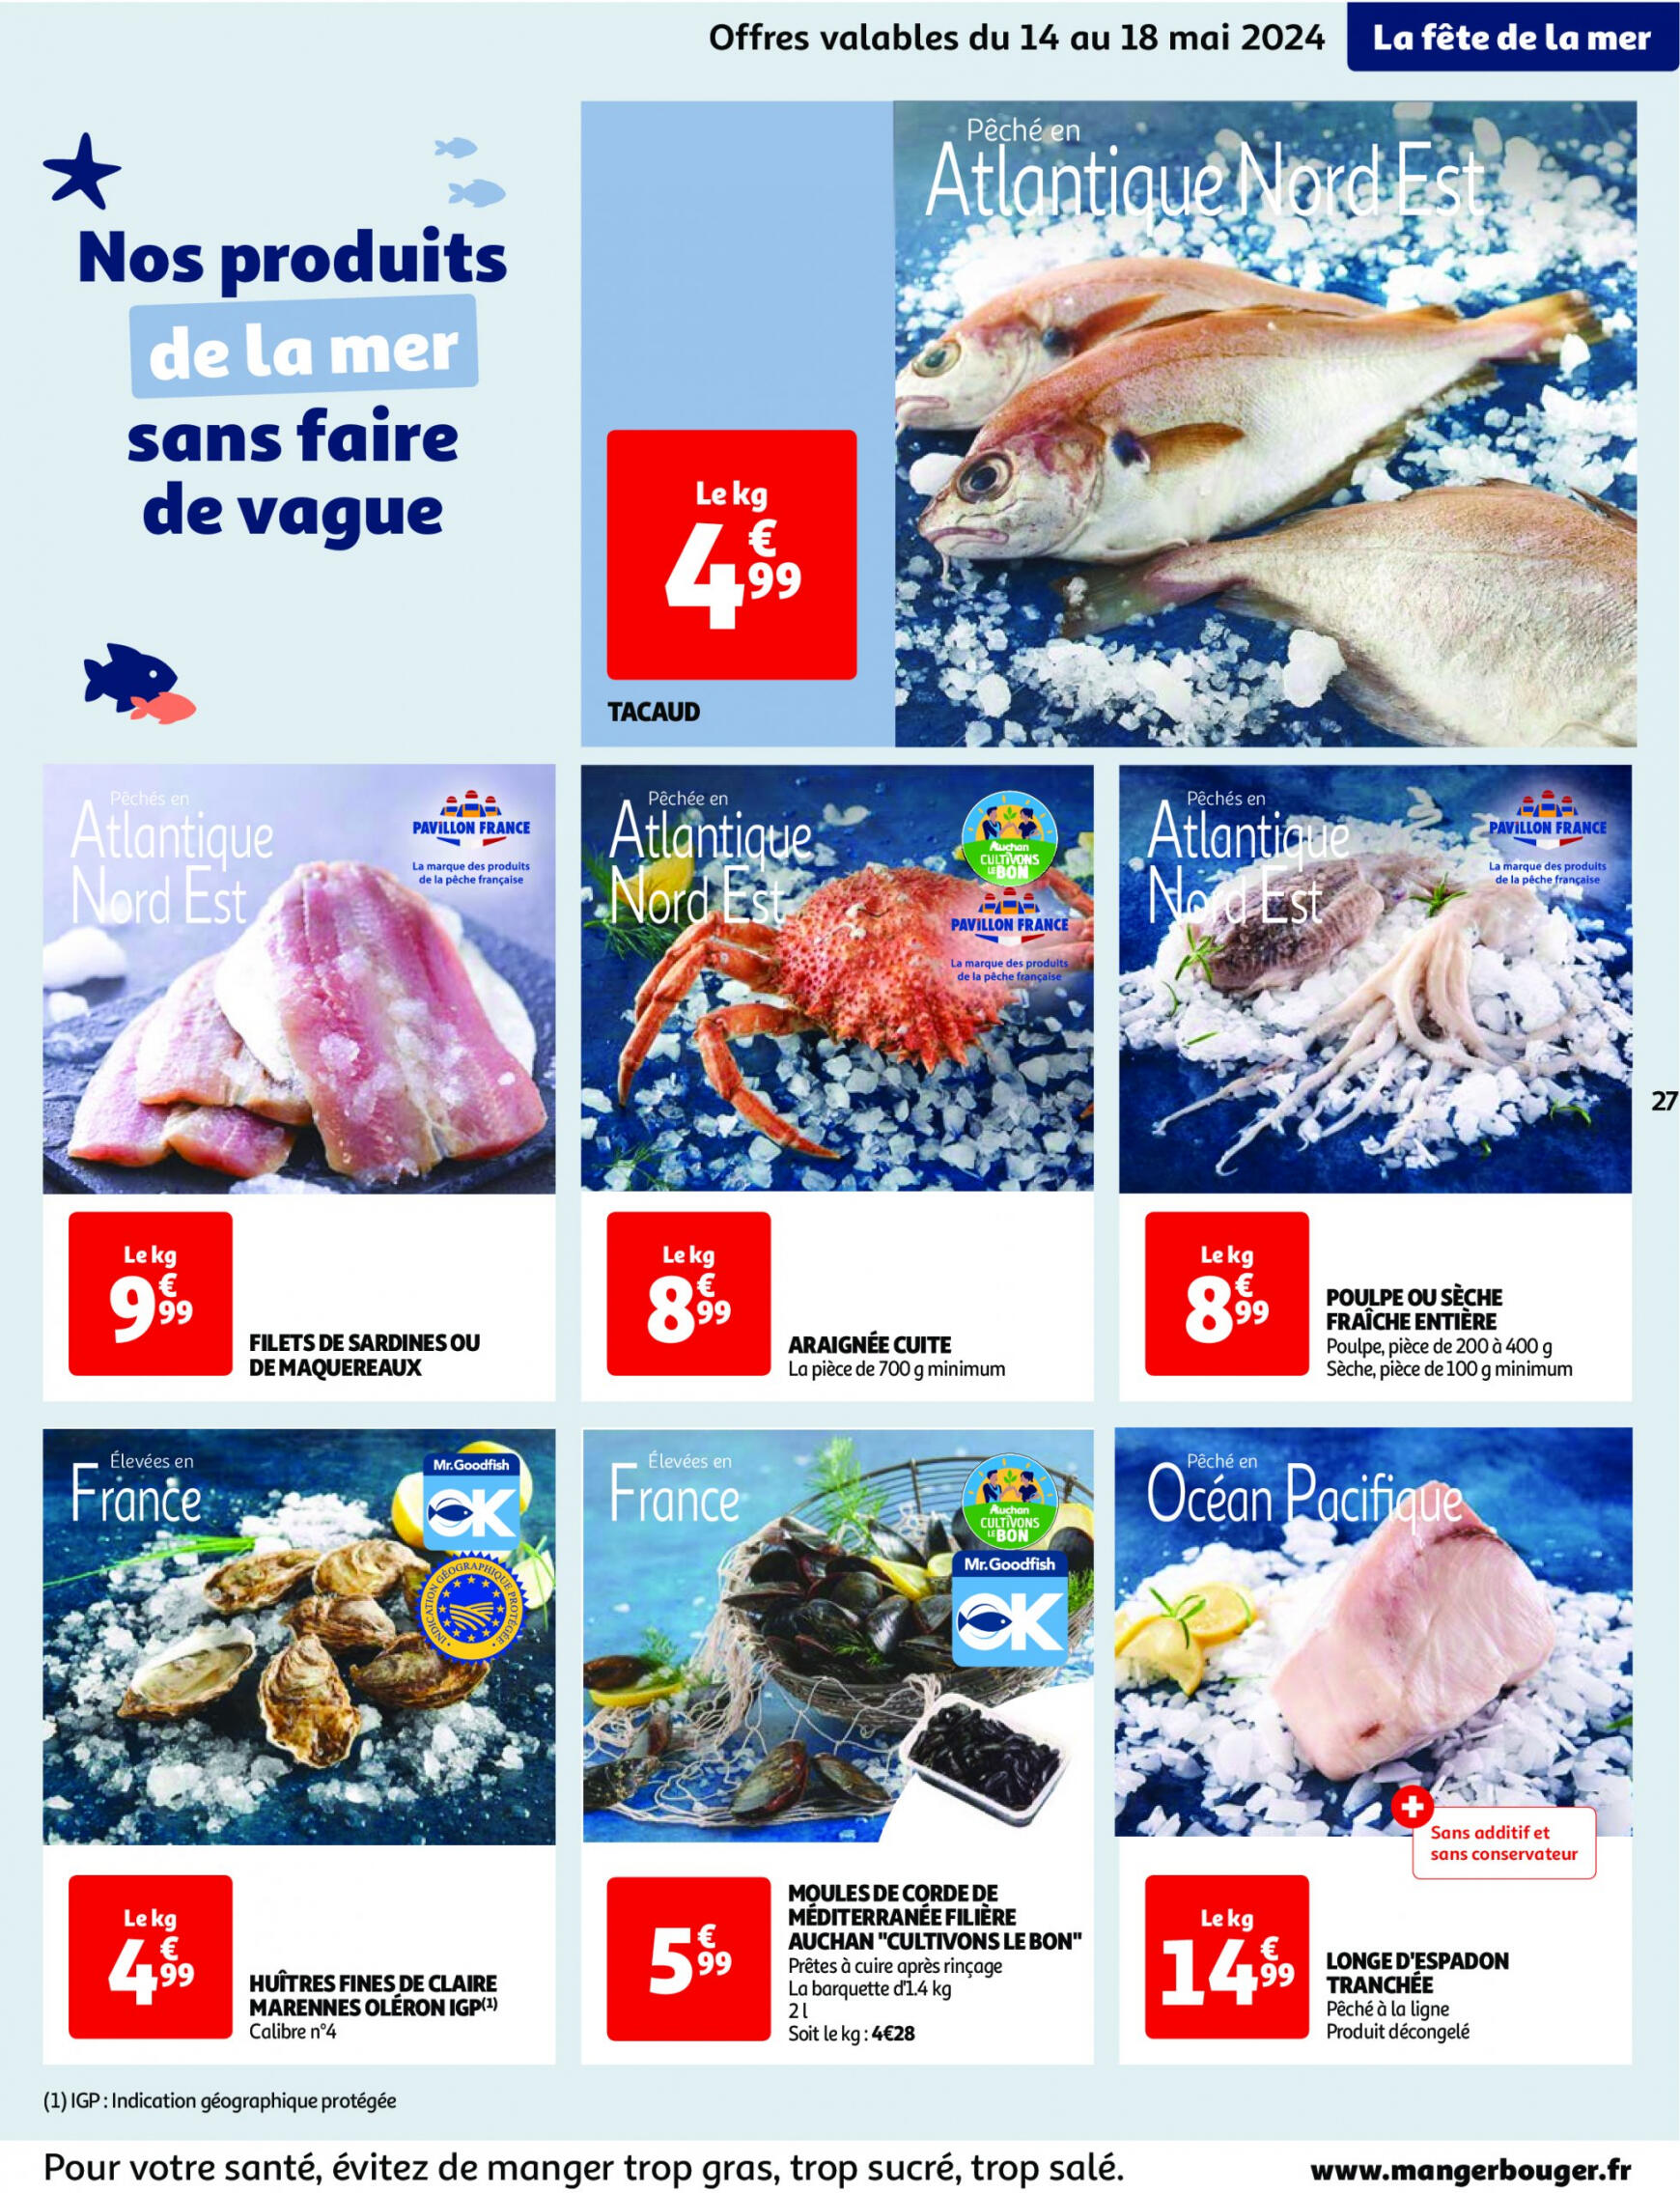 auchan - Auchan - Nos surgelés ont tout bon folder huidig 14.05. - 21.05. - page: 27